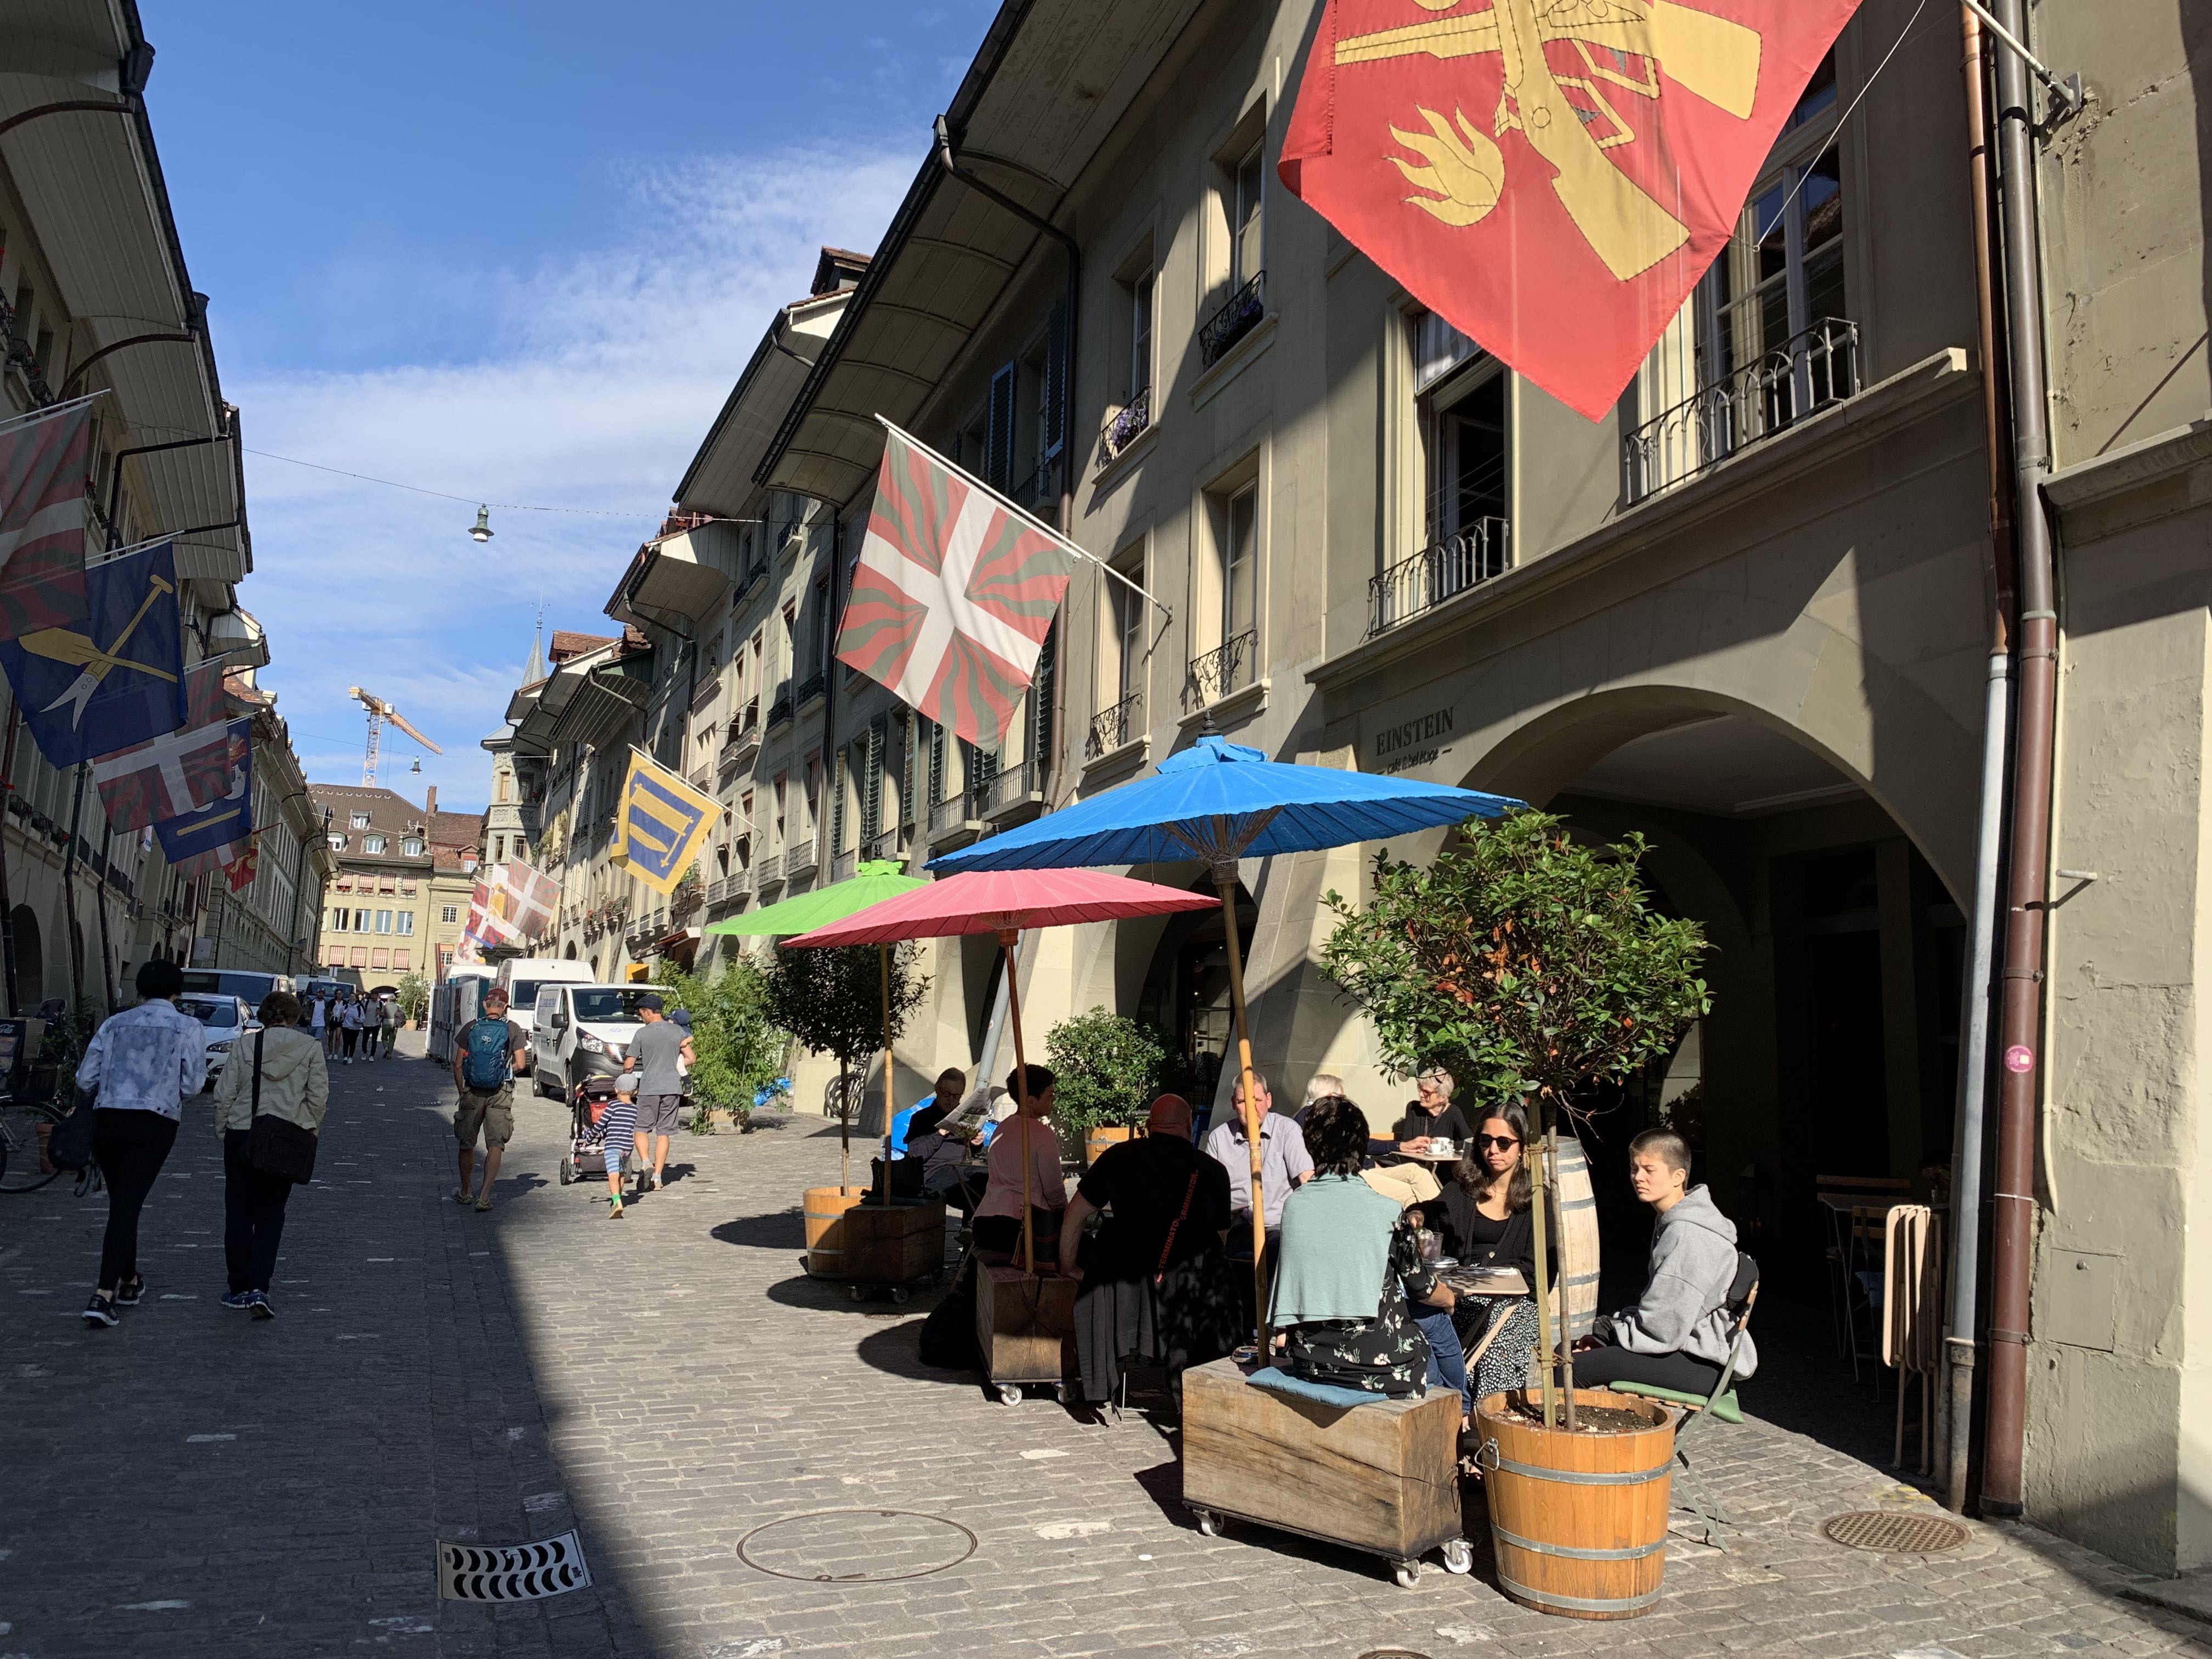 Passeio pela Altstadt com pausas para uma cervejinha, no ritmo de Berna